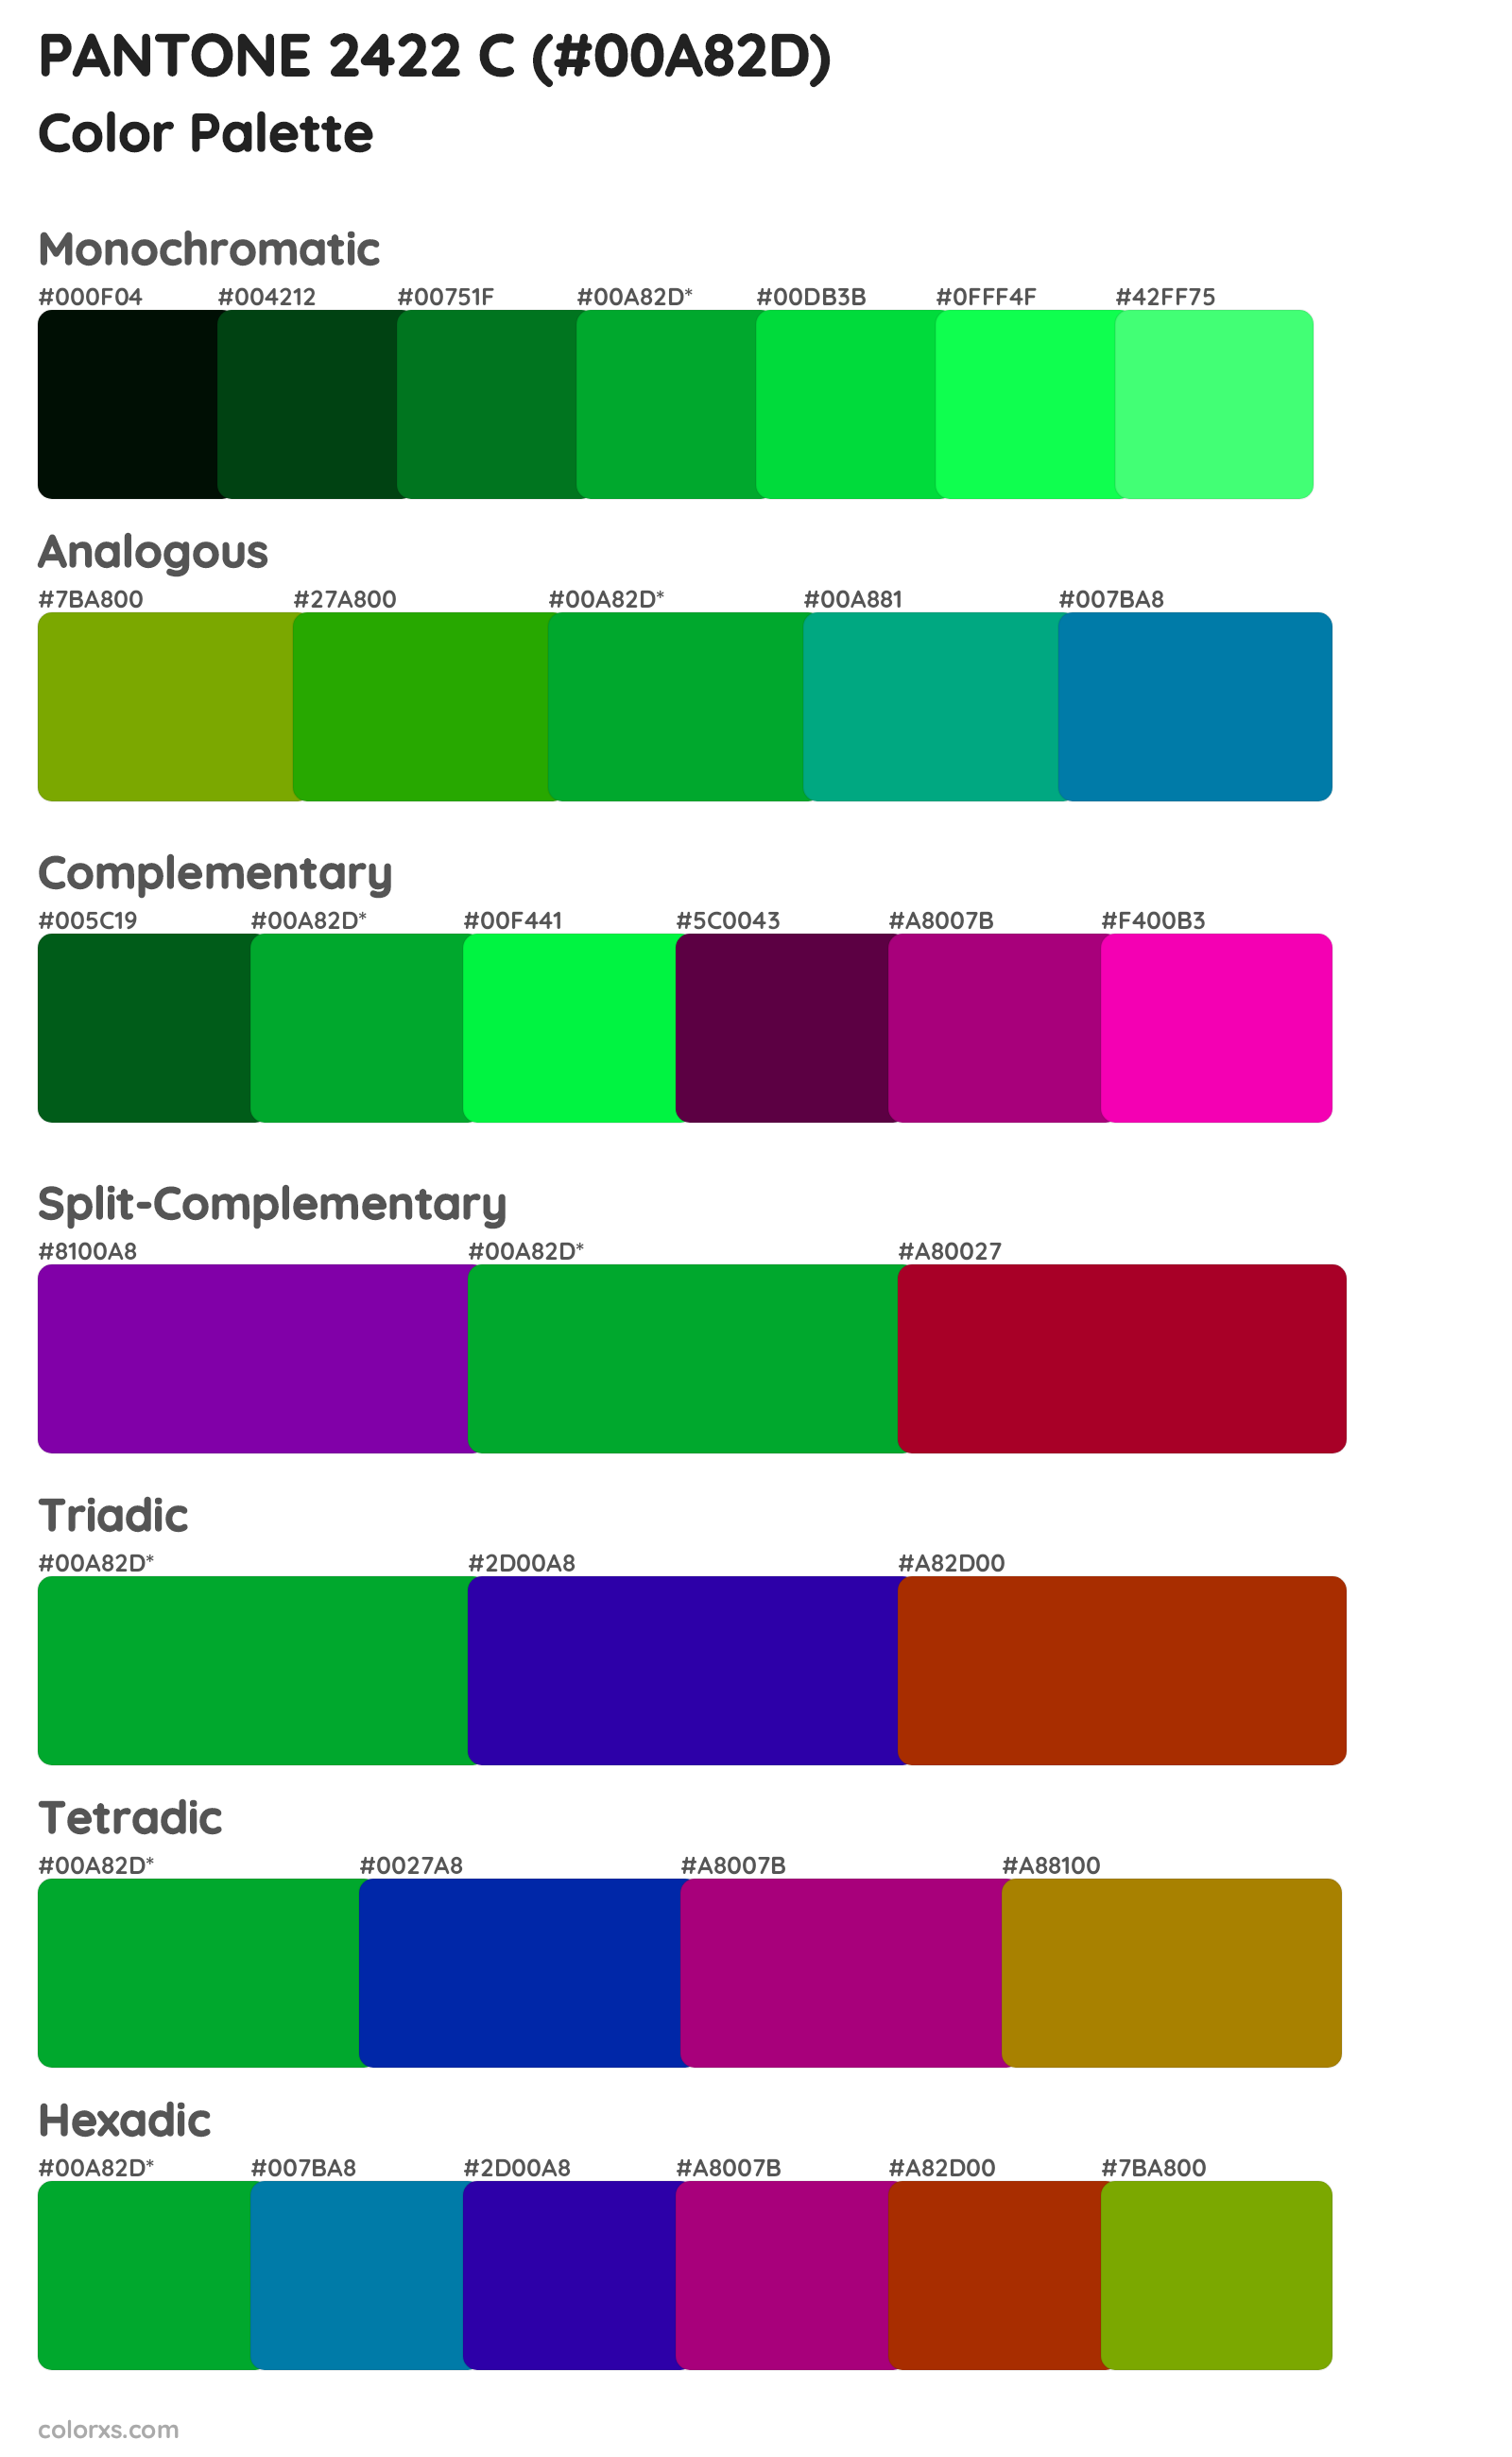 PANTONE 2422 C Color Scheme Palettes